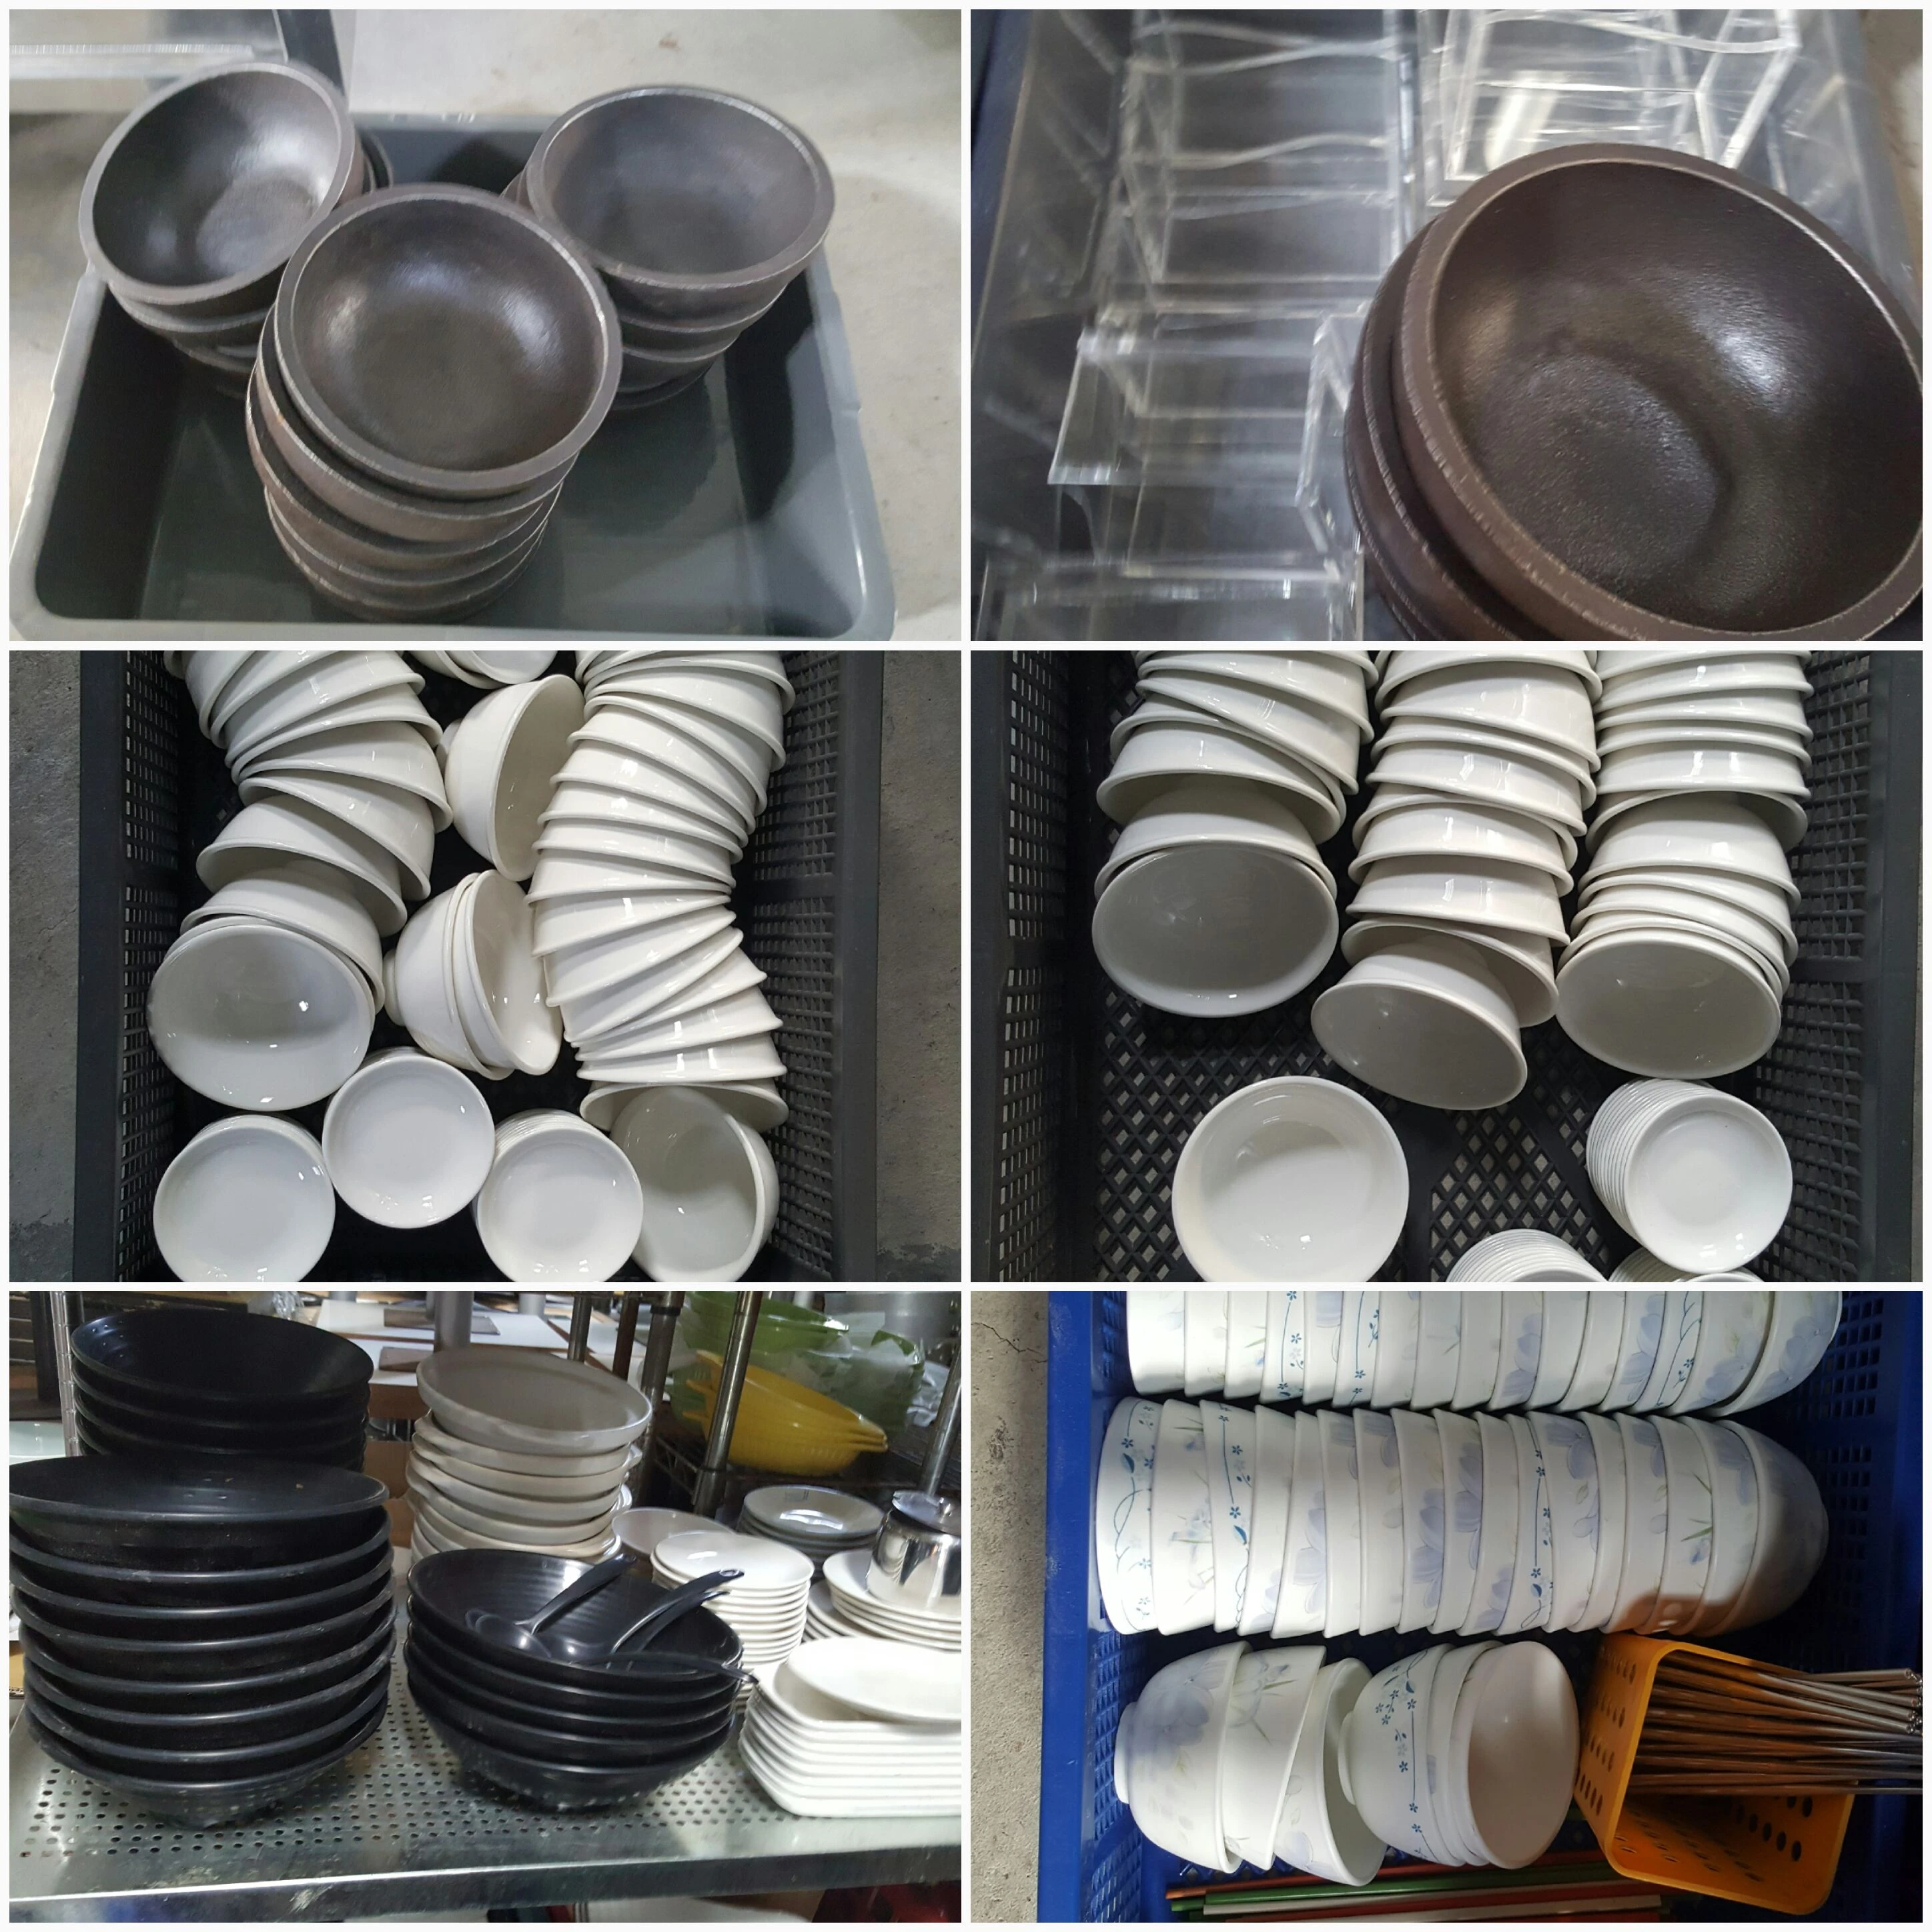 回收各式餐廳用碗盤餐具、白鐵器具